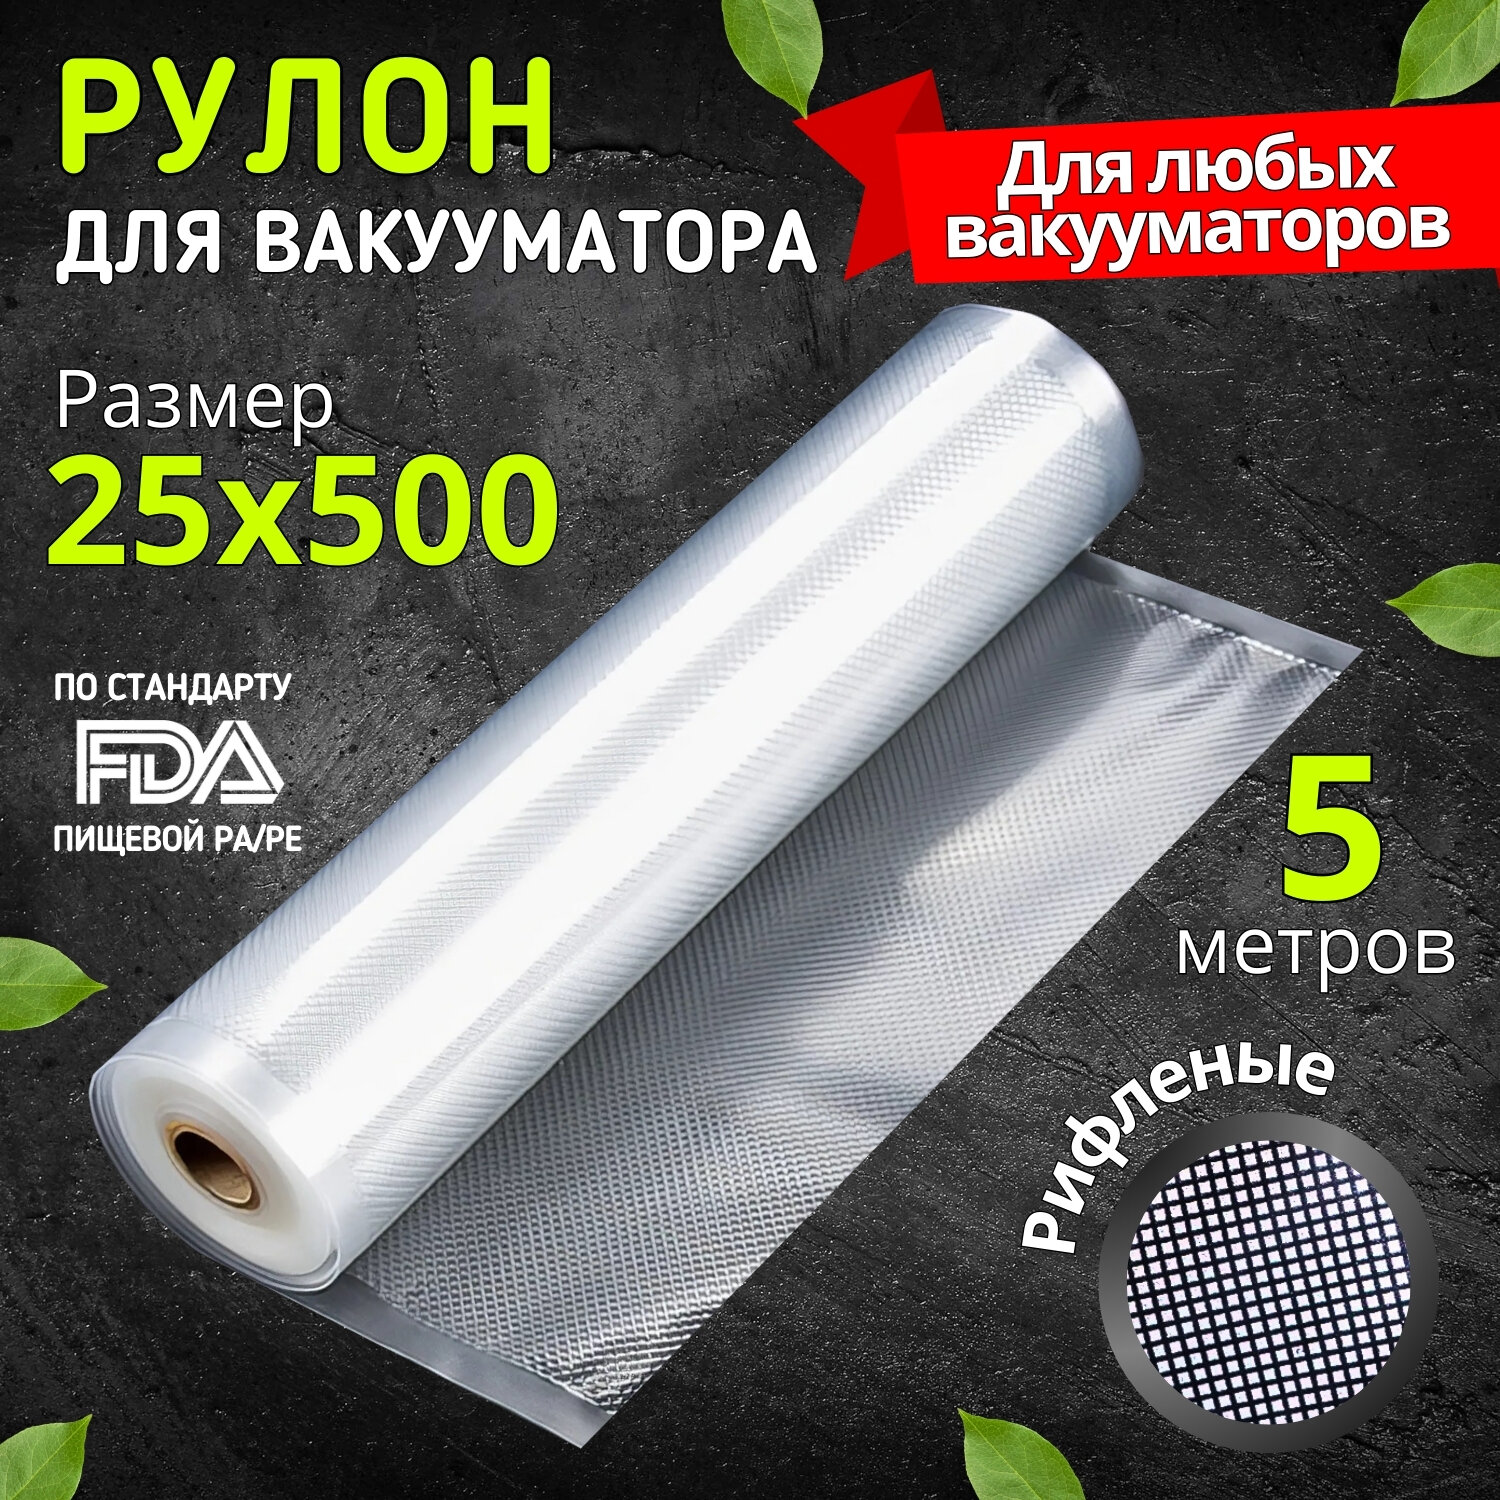 Пакеты для вакууматора рифленые пленка рулон для заморозки и хранения продуктов 25х500 см